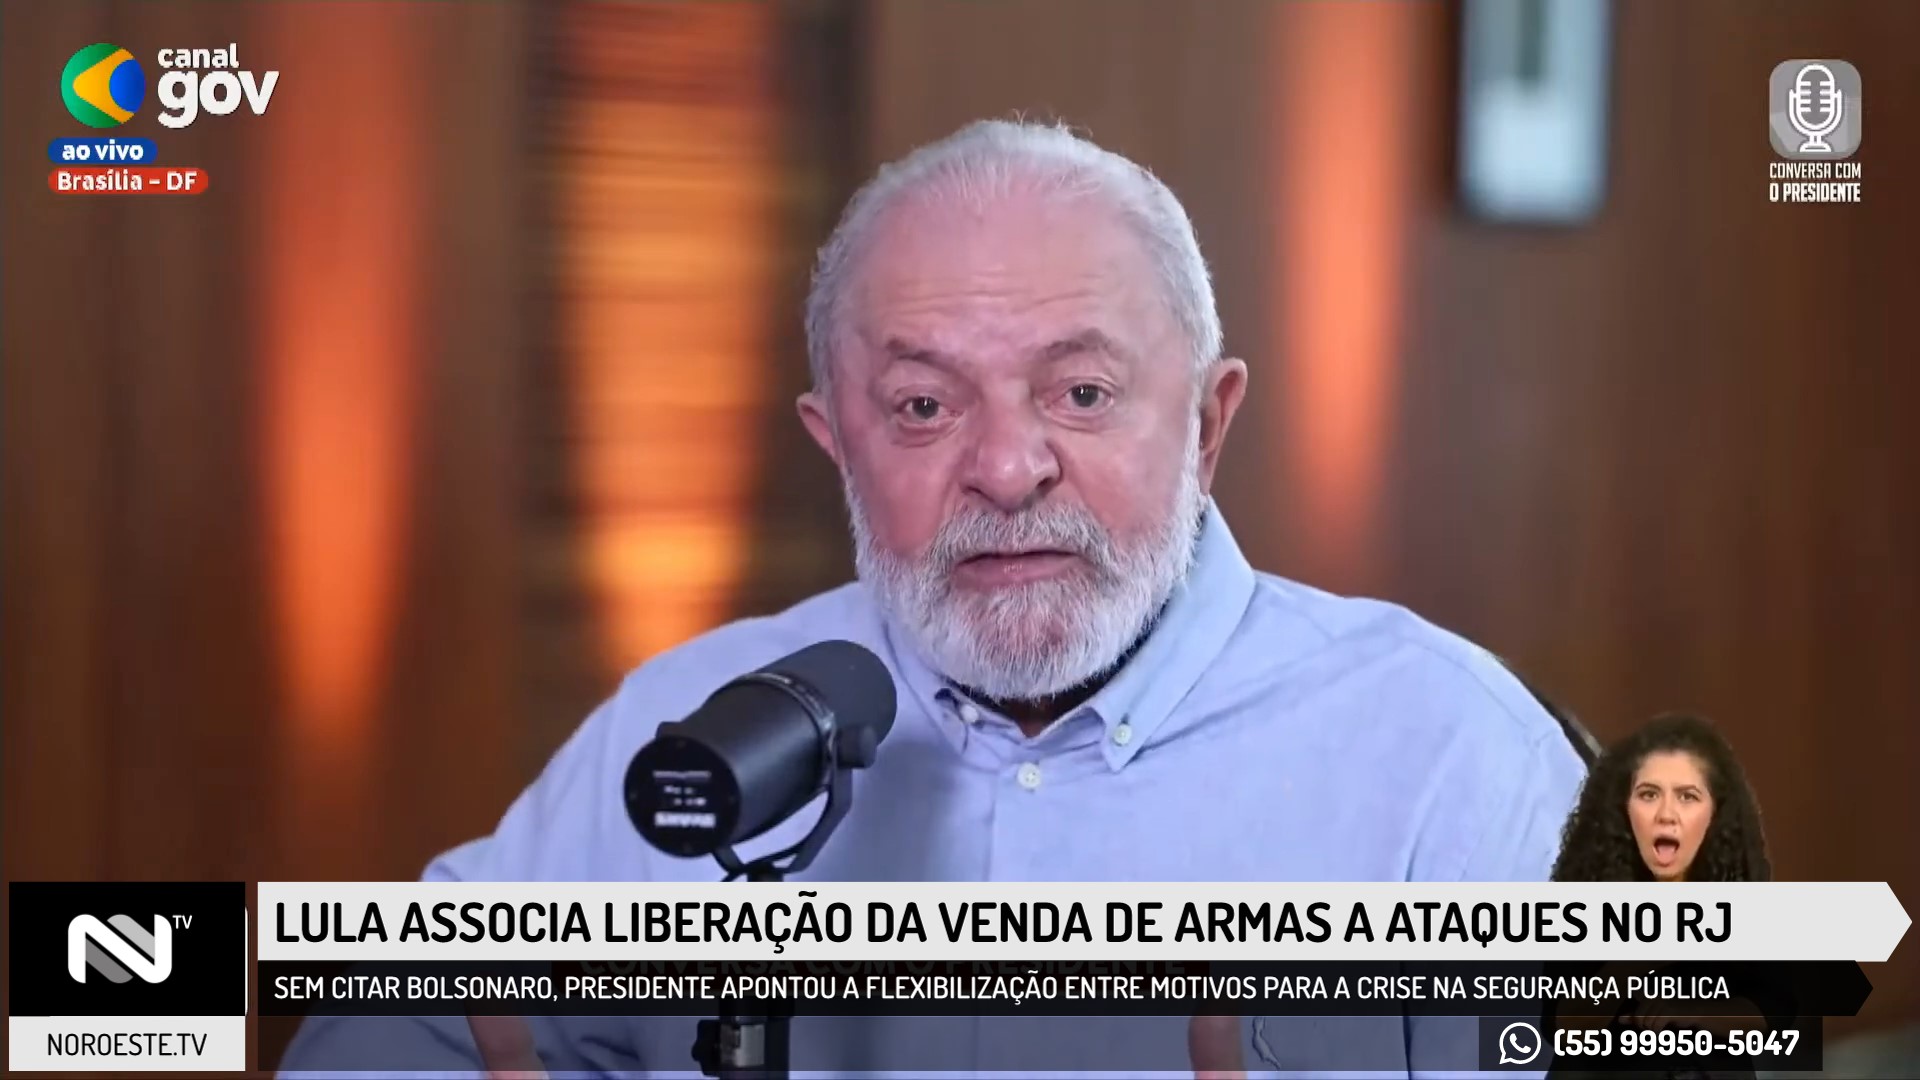 Lula associa liberação da venda de armas a ataques da milícia no Rio de Janeiro